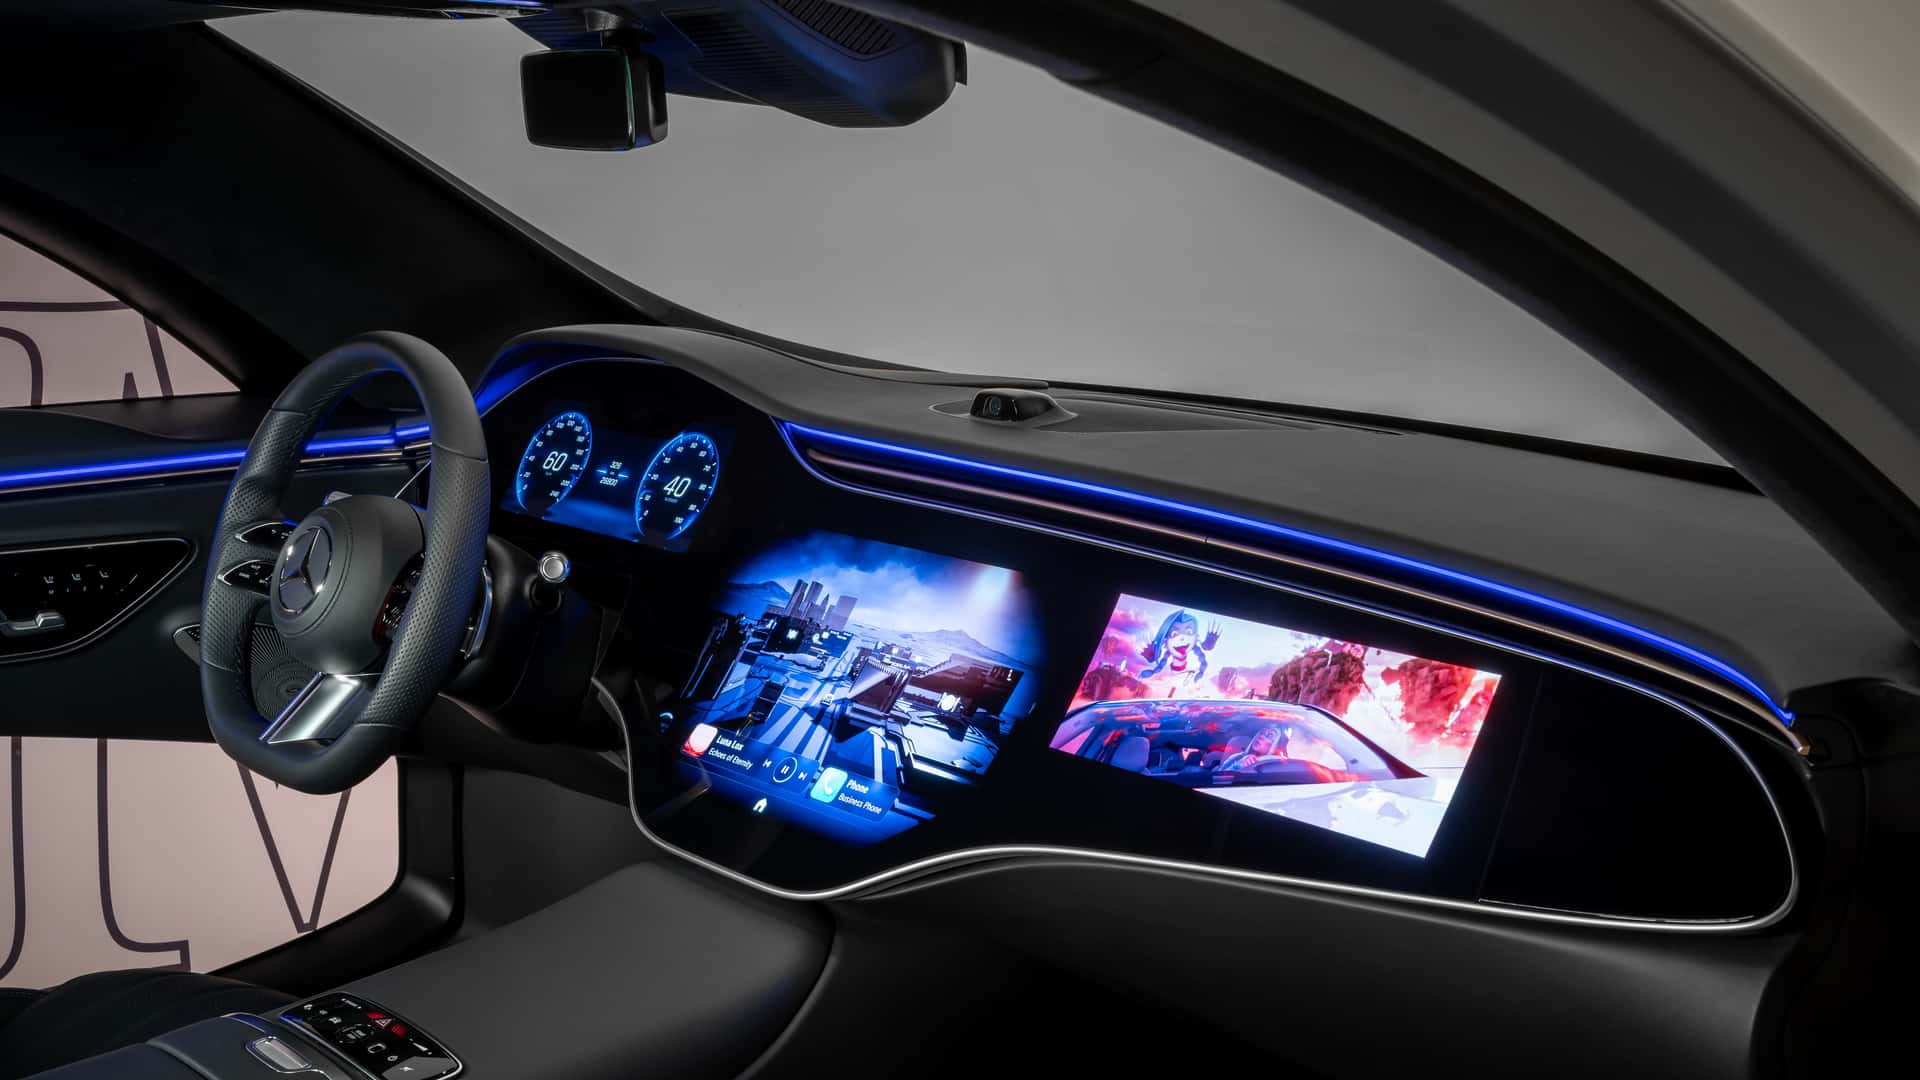 مرسيدس تكشف عن الجيل الجديد من نظام التشغيل لسياراتها بتقنيات مبتكرة جديدة